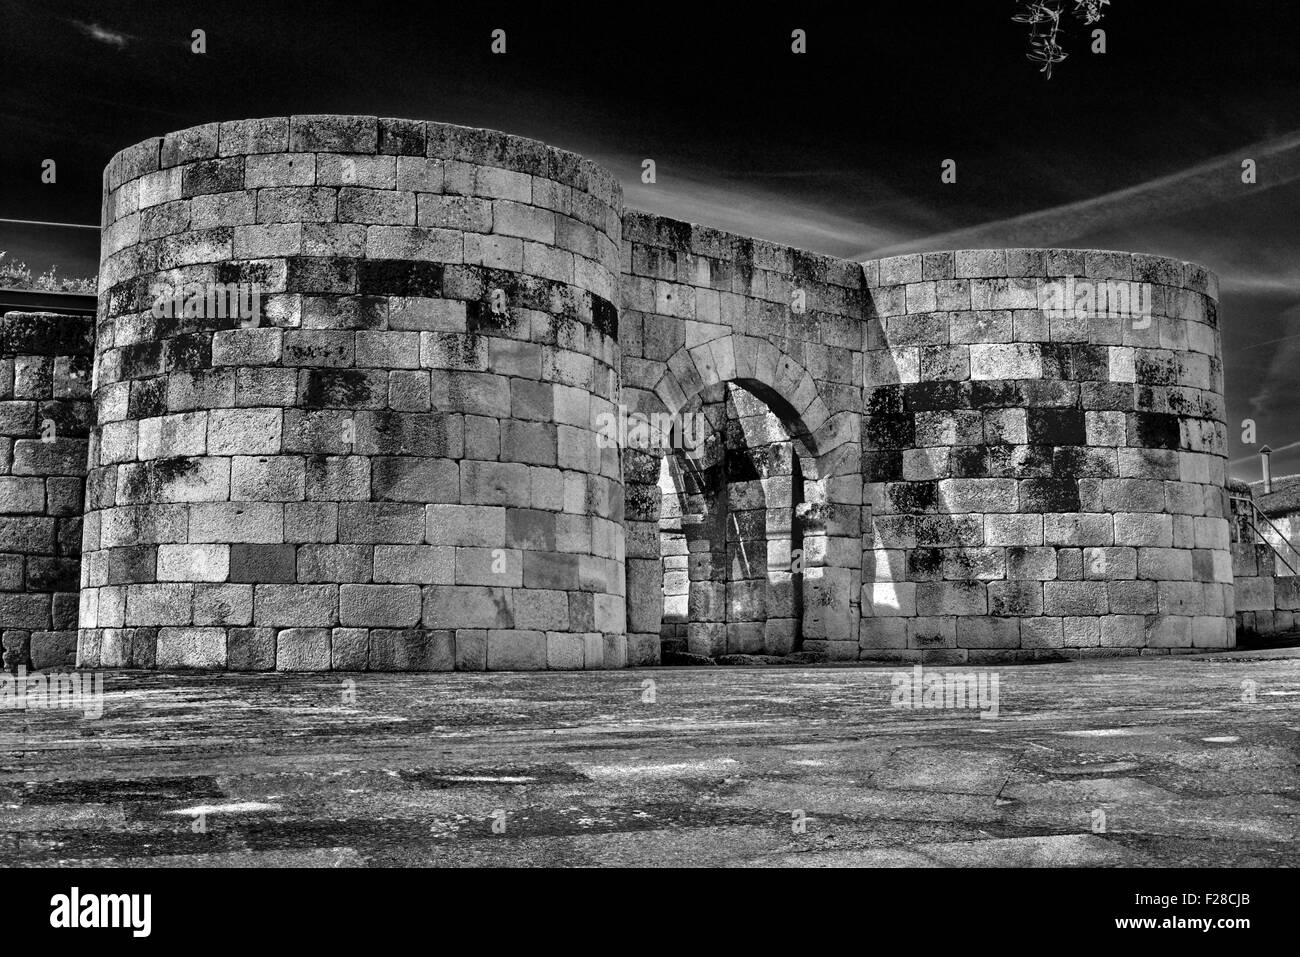 Portugal: Historische Tor von der ehemaligen römischen Stadtmauer (4. Jahrhundert) in Idanha-a-Velha (bw) Stockfoto